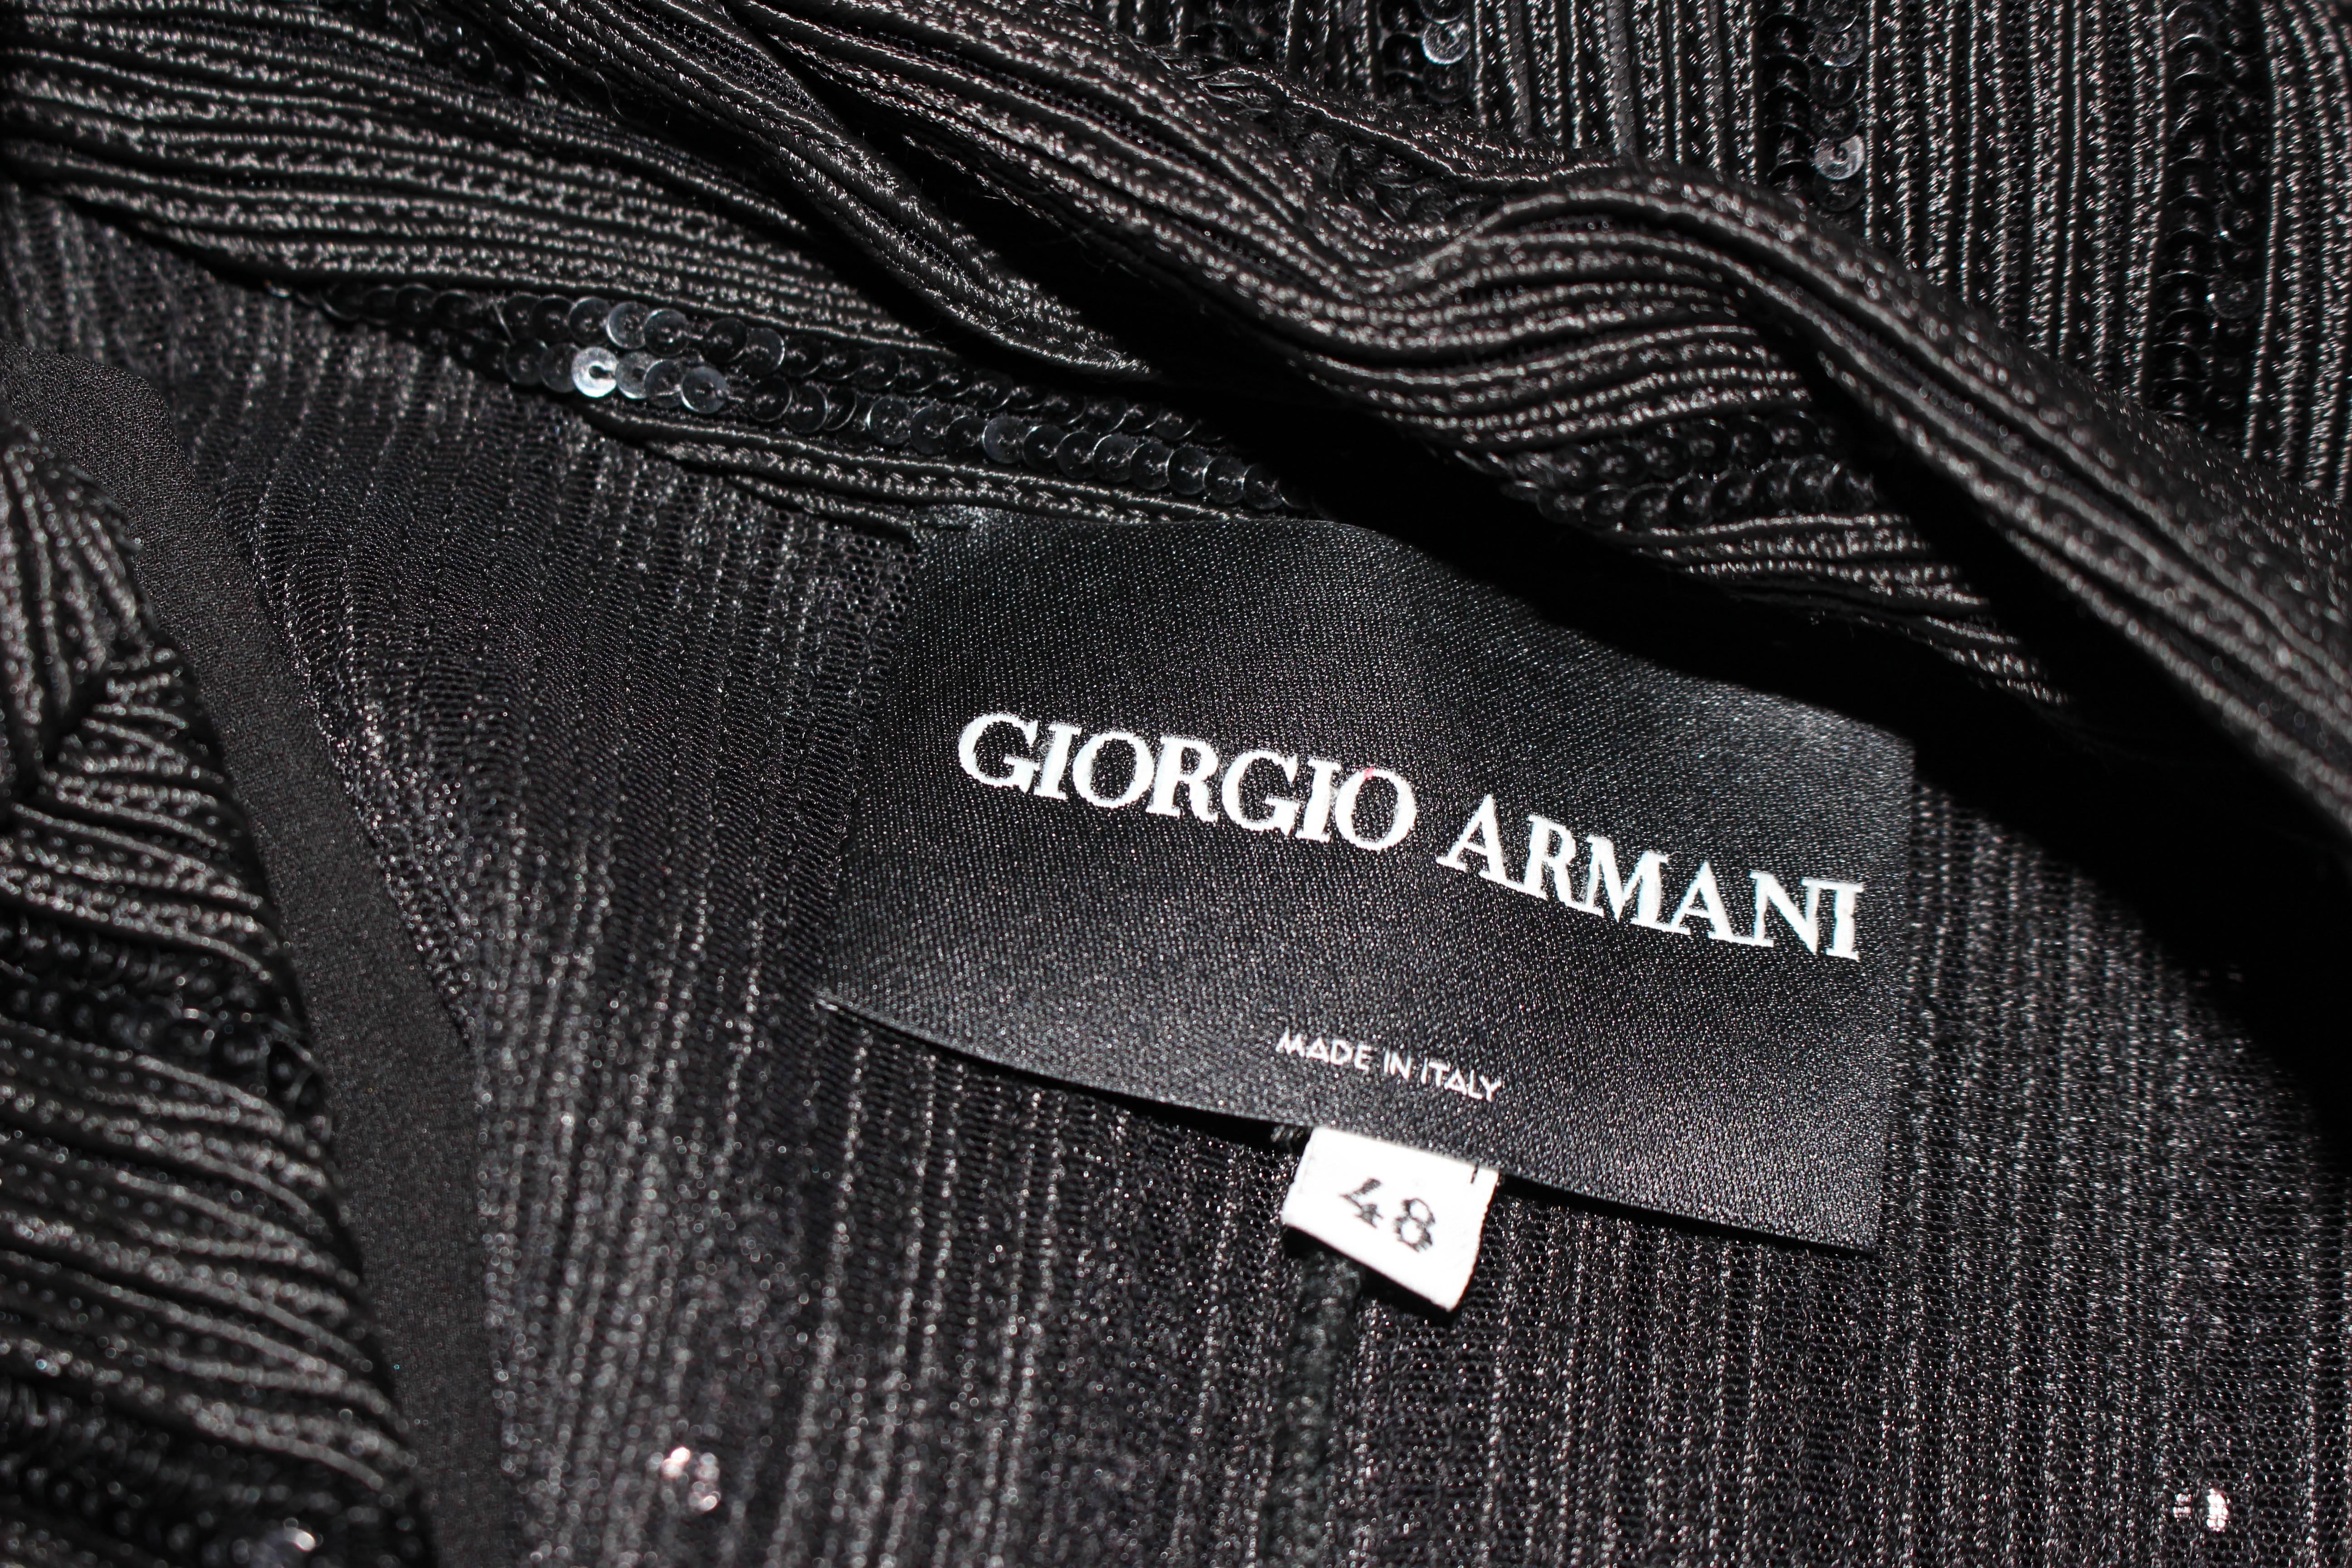 GIORGIO ARMANI Black Sequin Knit with Lace Sweater Size 48 4